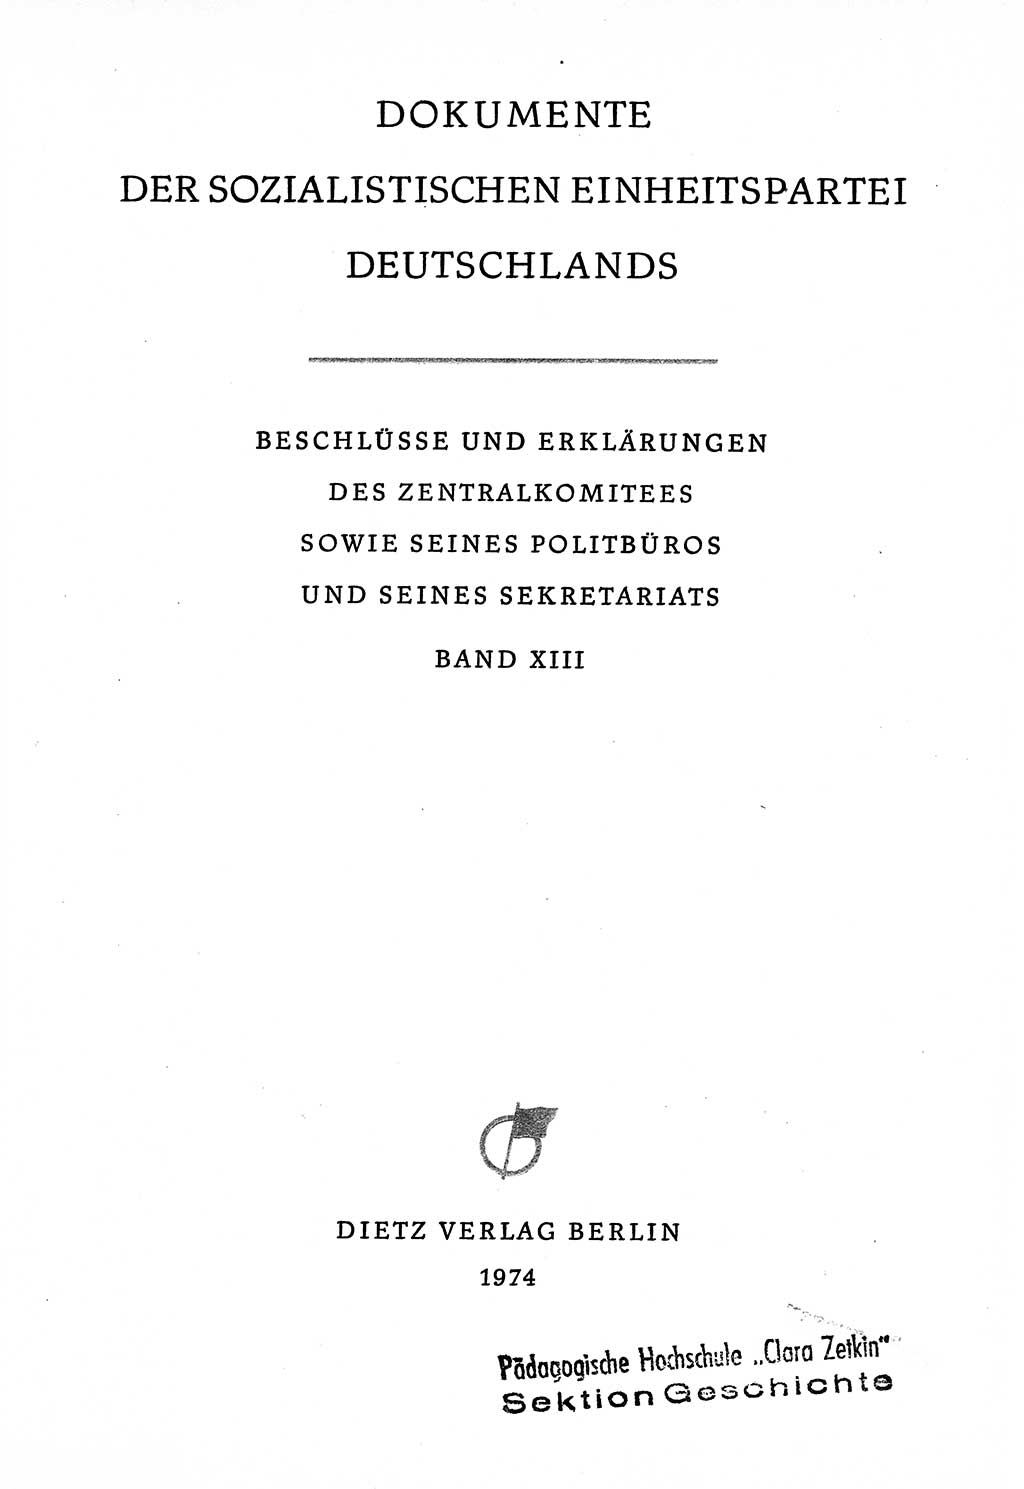 Dokumente der Sozialistischen Einheitspartei Deutschlands (SED) [Deutsche Demokratische Republik (DDR)] 1970-1971, Seite 3 (Dok. SED DDR 1970-1971, S. 3)